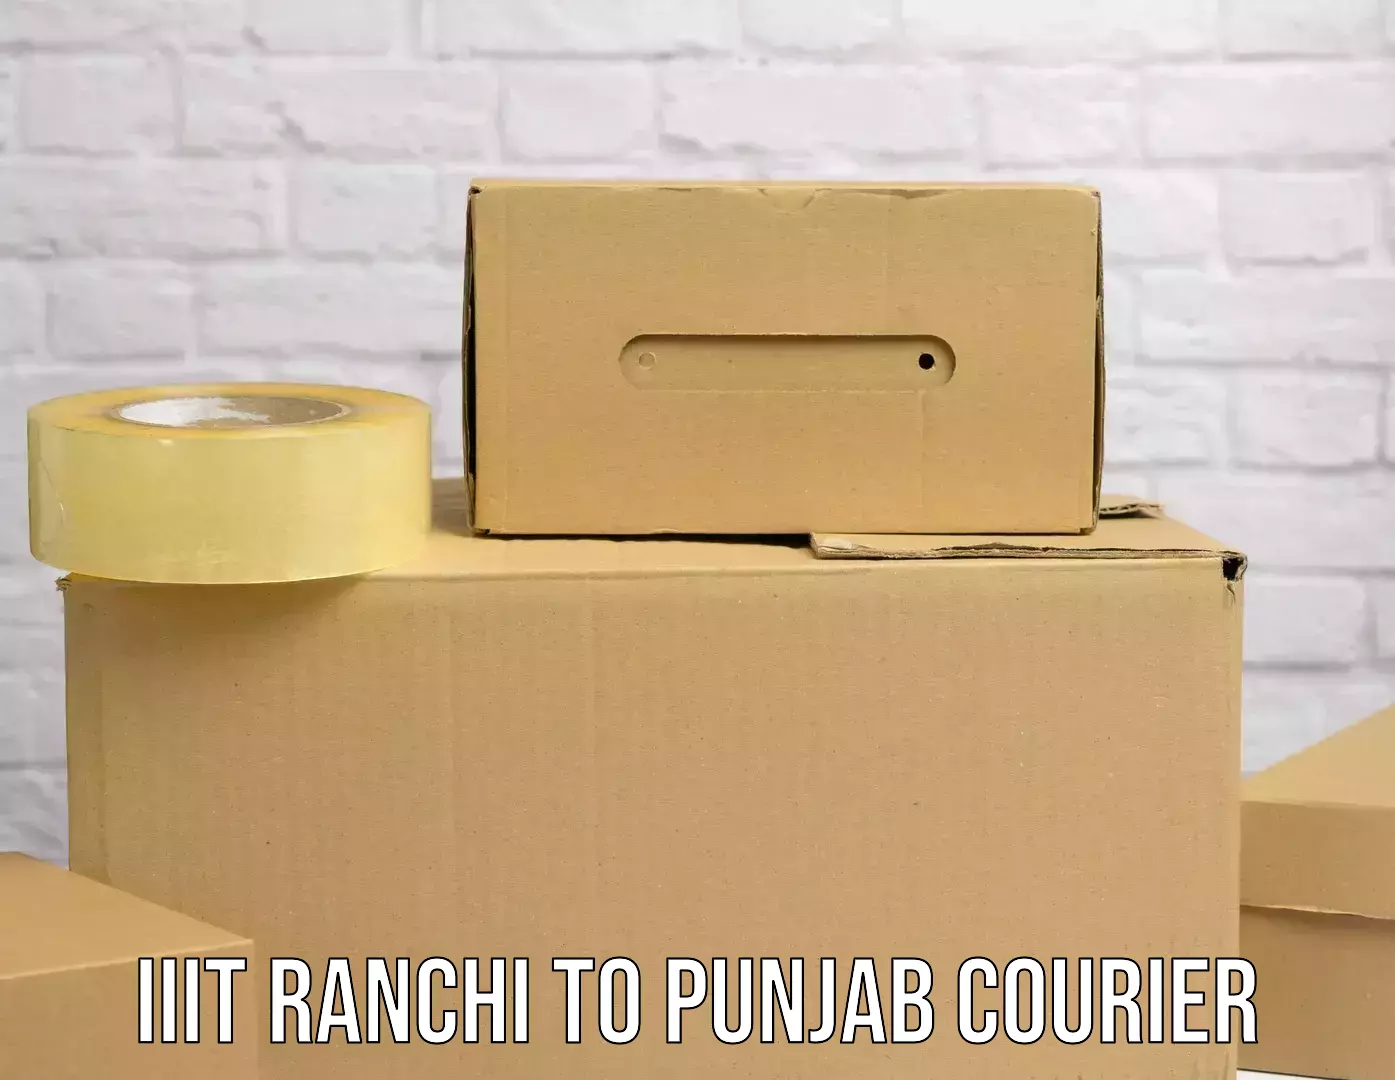 Cost-effective courier options IIIT Ranchi to Zirakpur